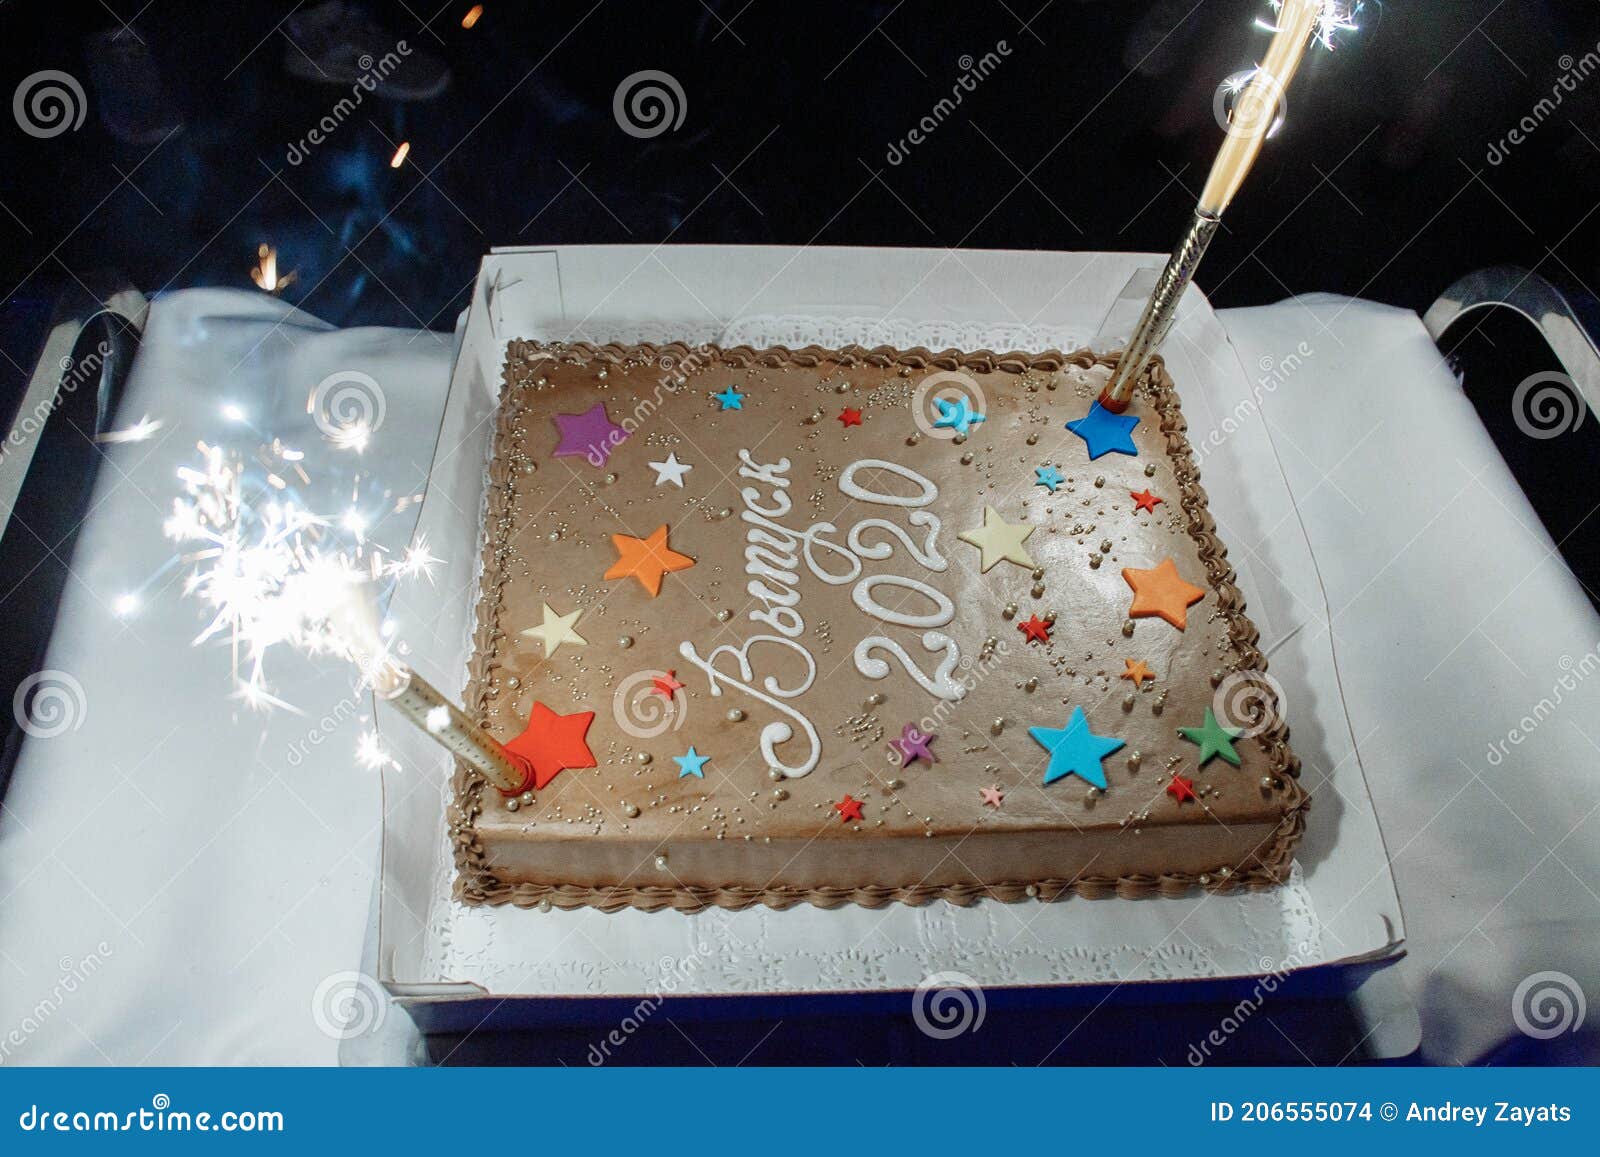 Gâteau D'anniversaire à L'école De Graduation. Orné D'étoiles Et D